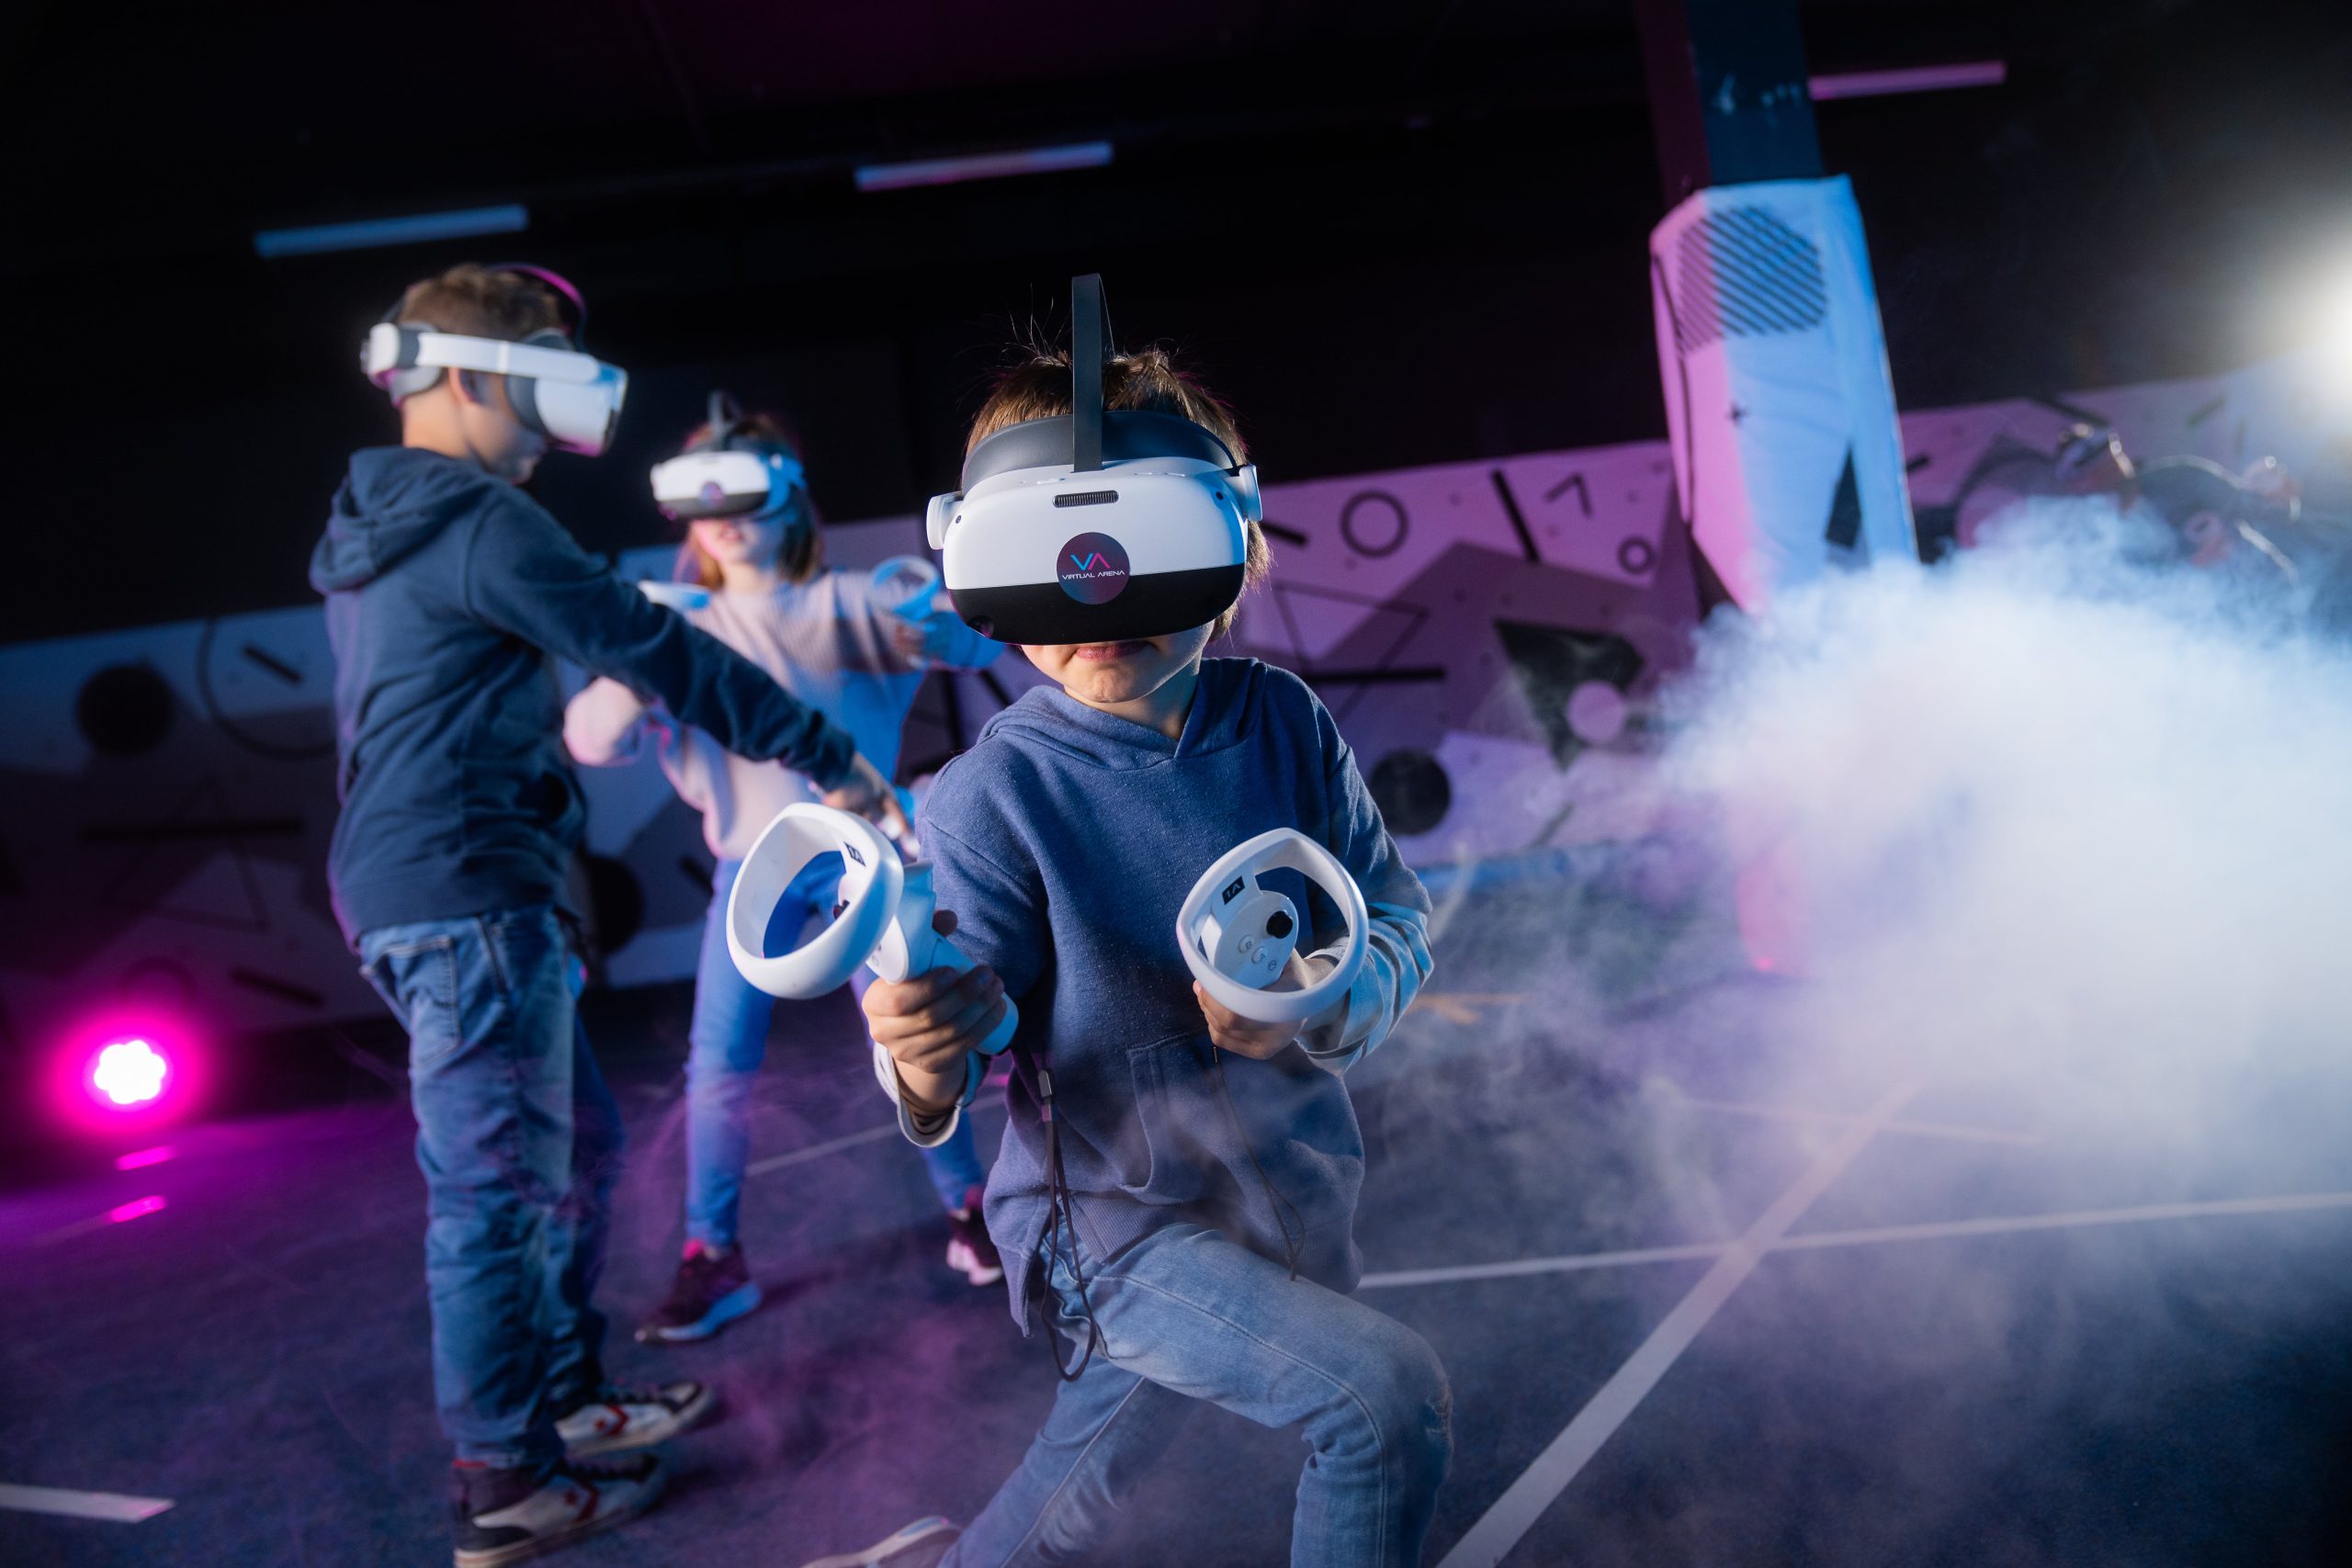 Kinder spielen in einer virtuellen Realität mit VR-Headsets und Controllern.